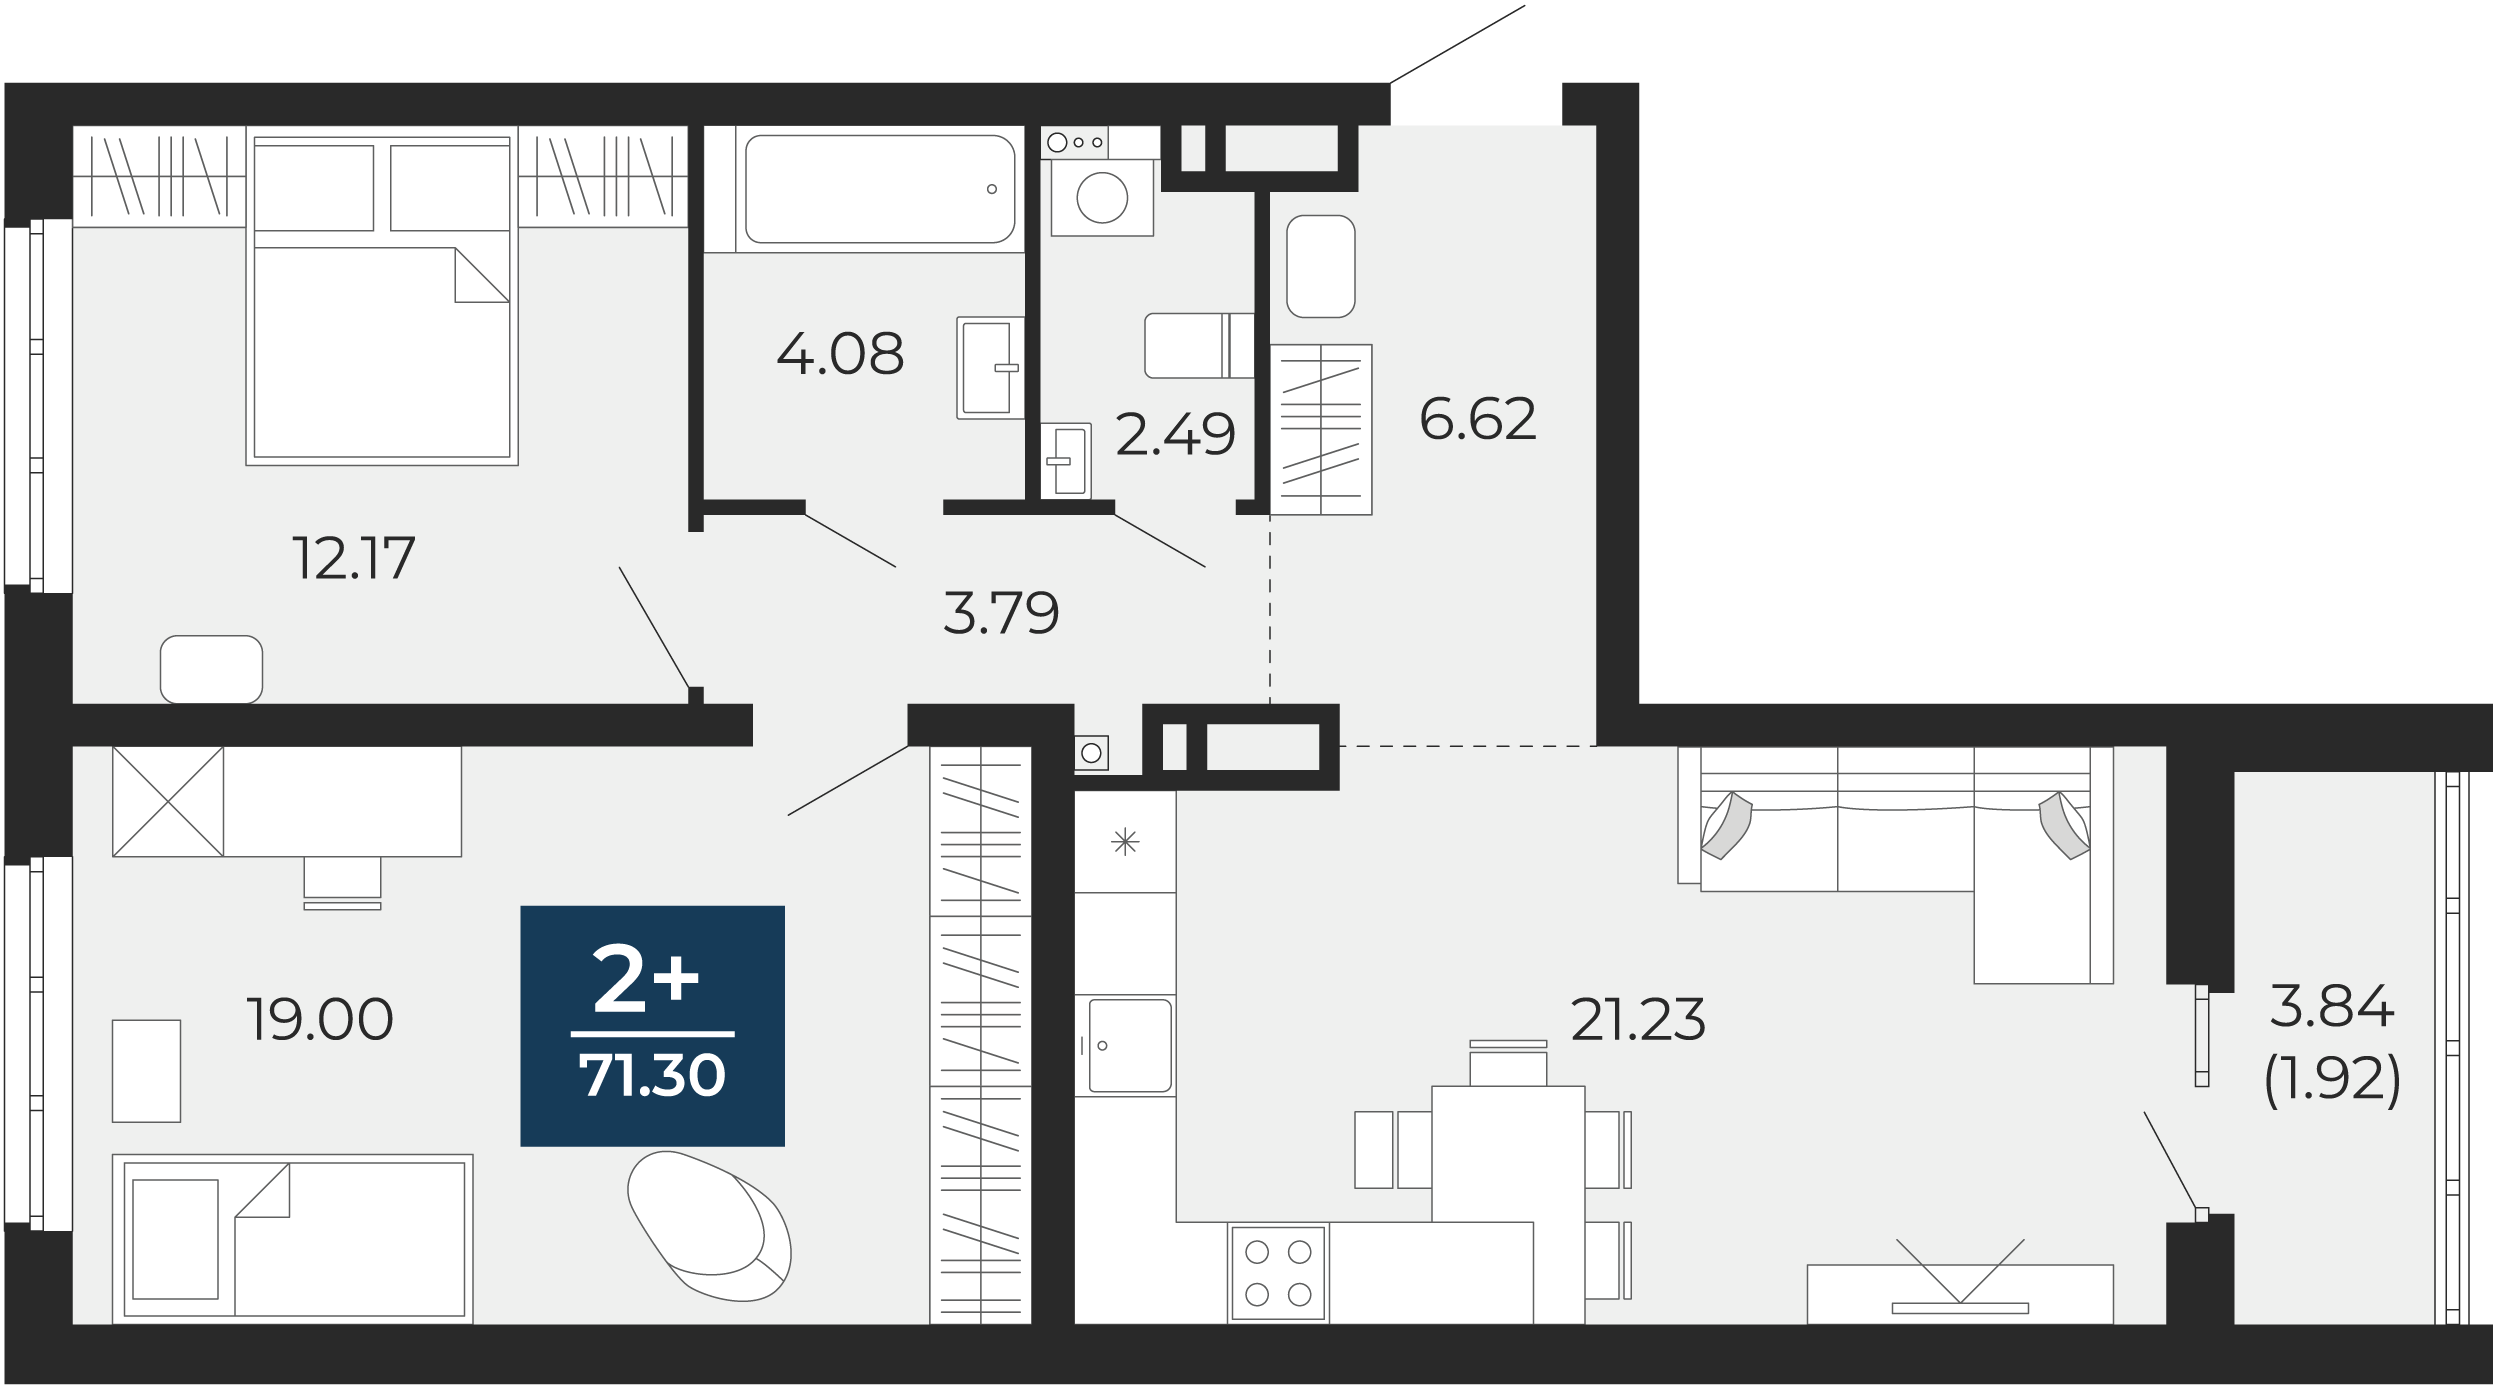 Квартира № 149, 2-комнатная, 71.3 кв. м, 16 этаж